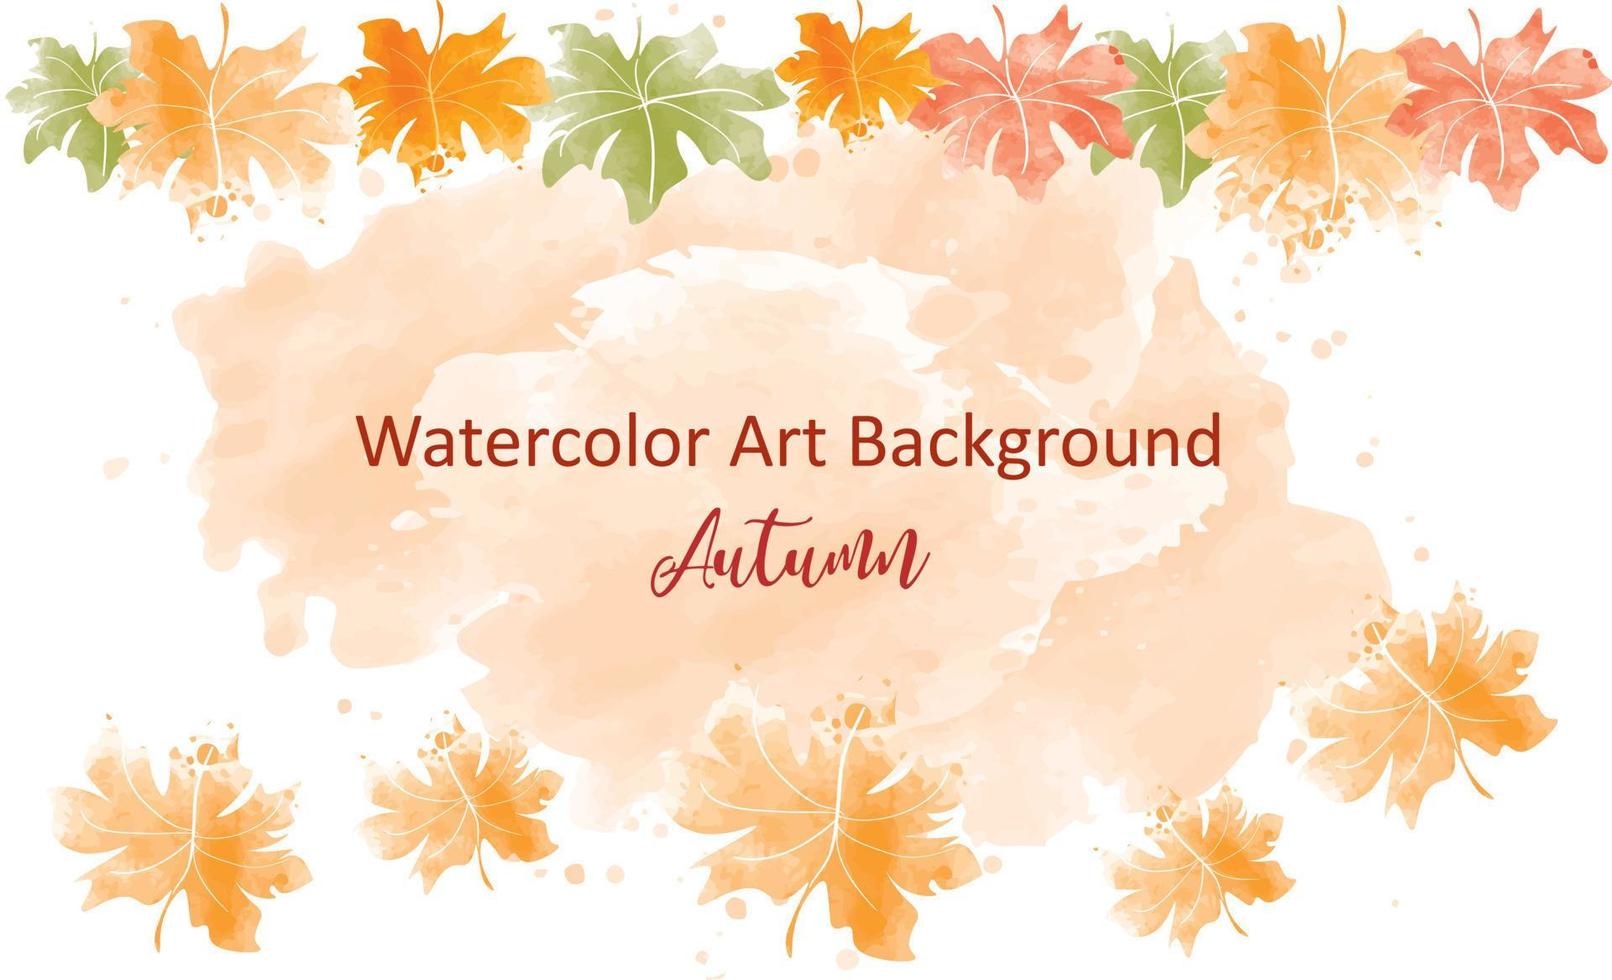 coleção de outono de fundo abstrato aquarela com maple e folhas sazonais. arte natural em aquarela pintada à mão, perfeita para o seu cabeçalho projetado, banner, web, parede, cartões, etc. vetor